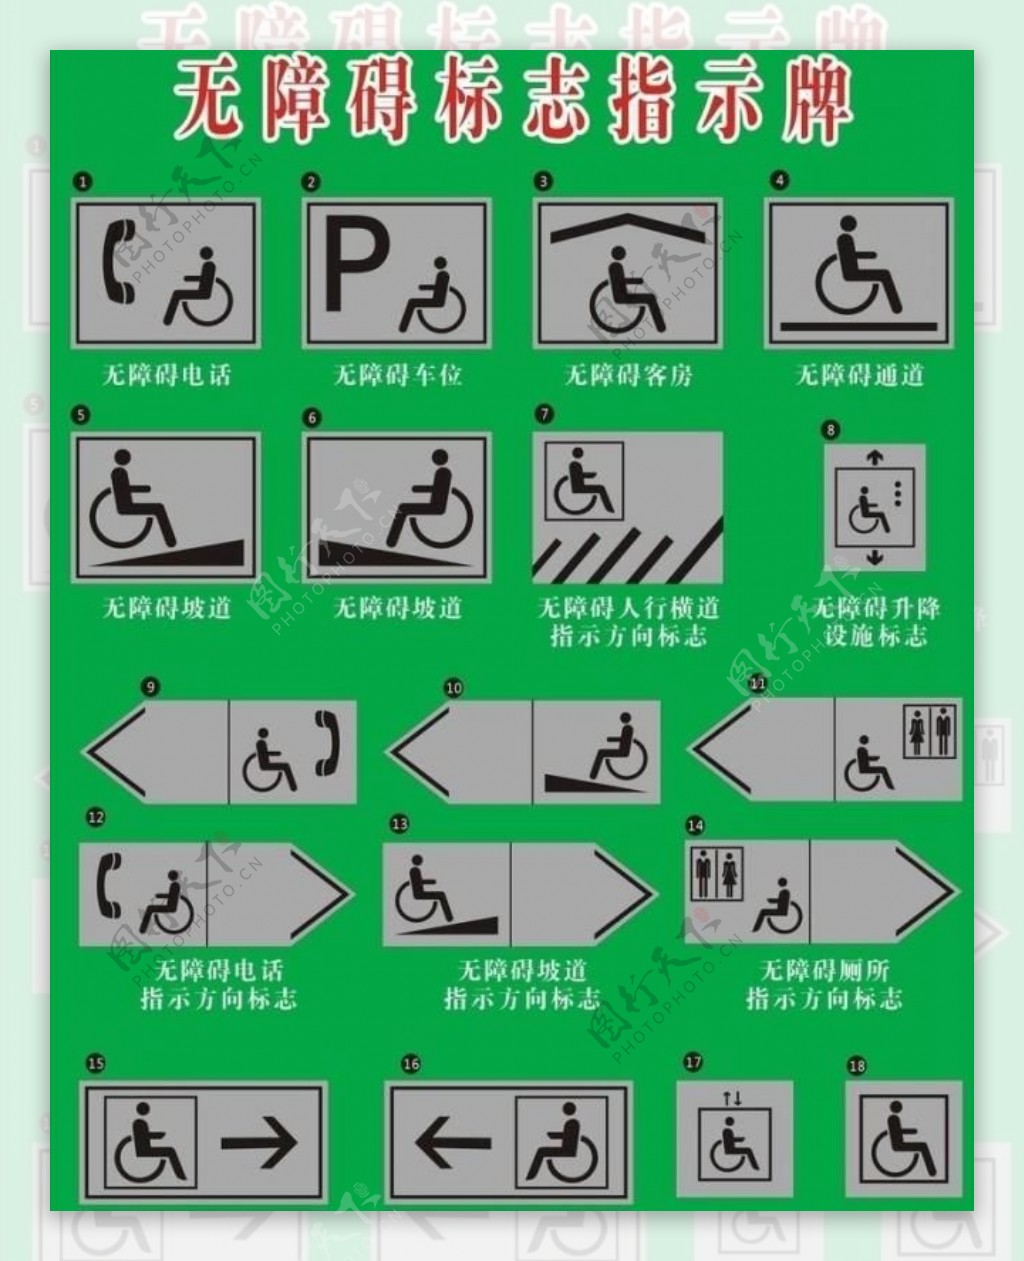 残疾人标志牌集图片